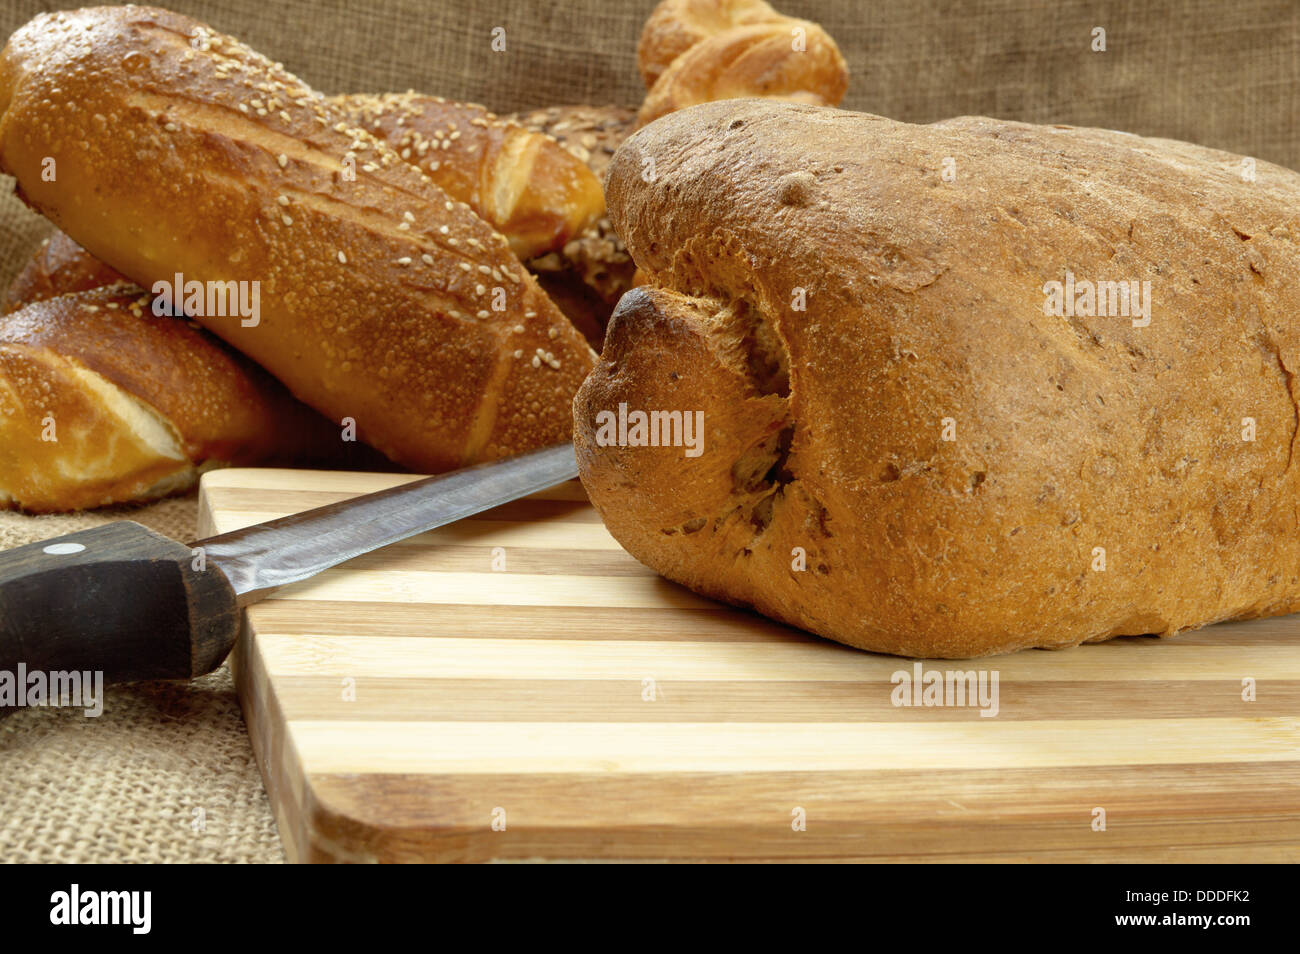 Lecker frisch knackig und warm hausgemachtes Brot. Selektiven Fokus mit geringen Schärfentiefe. Stockfoto